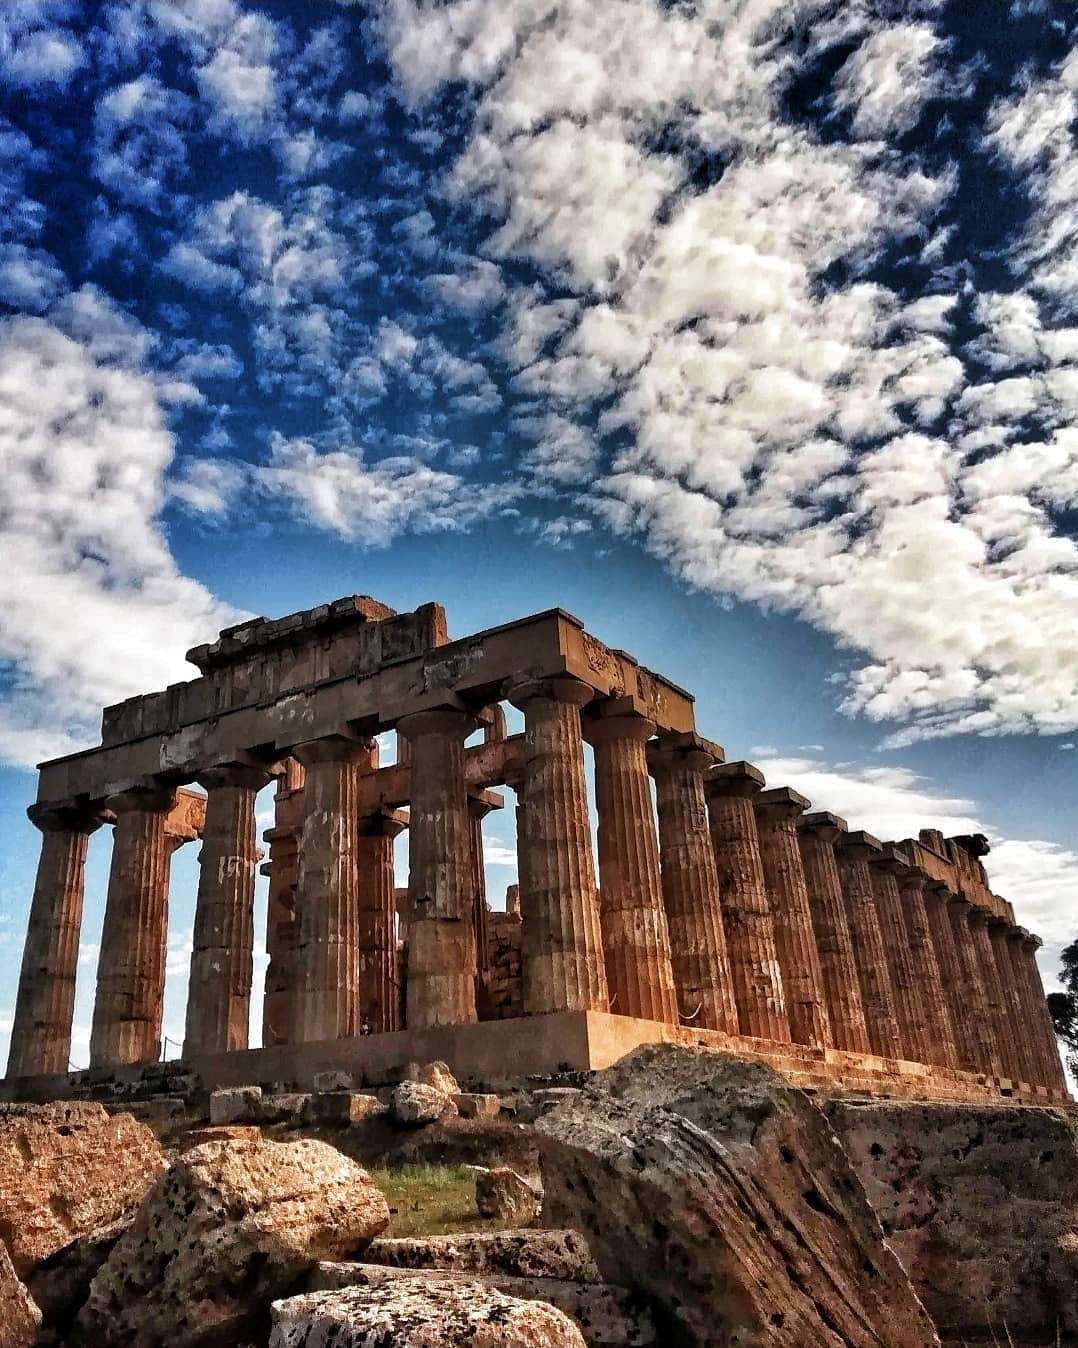 Sự kết hợp giữa văn hóa cổ và hiện đại tại Hy Lạp sẽ khiến bạn say đắm và muốn khám phá nơi đây ngay lập tức. Hãy cùng chiêm ngưỡng những hình ảnh đẹp của Hy Lạp để cảm nhận sự độc đáo và quyến rũ của quốc gia này.